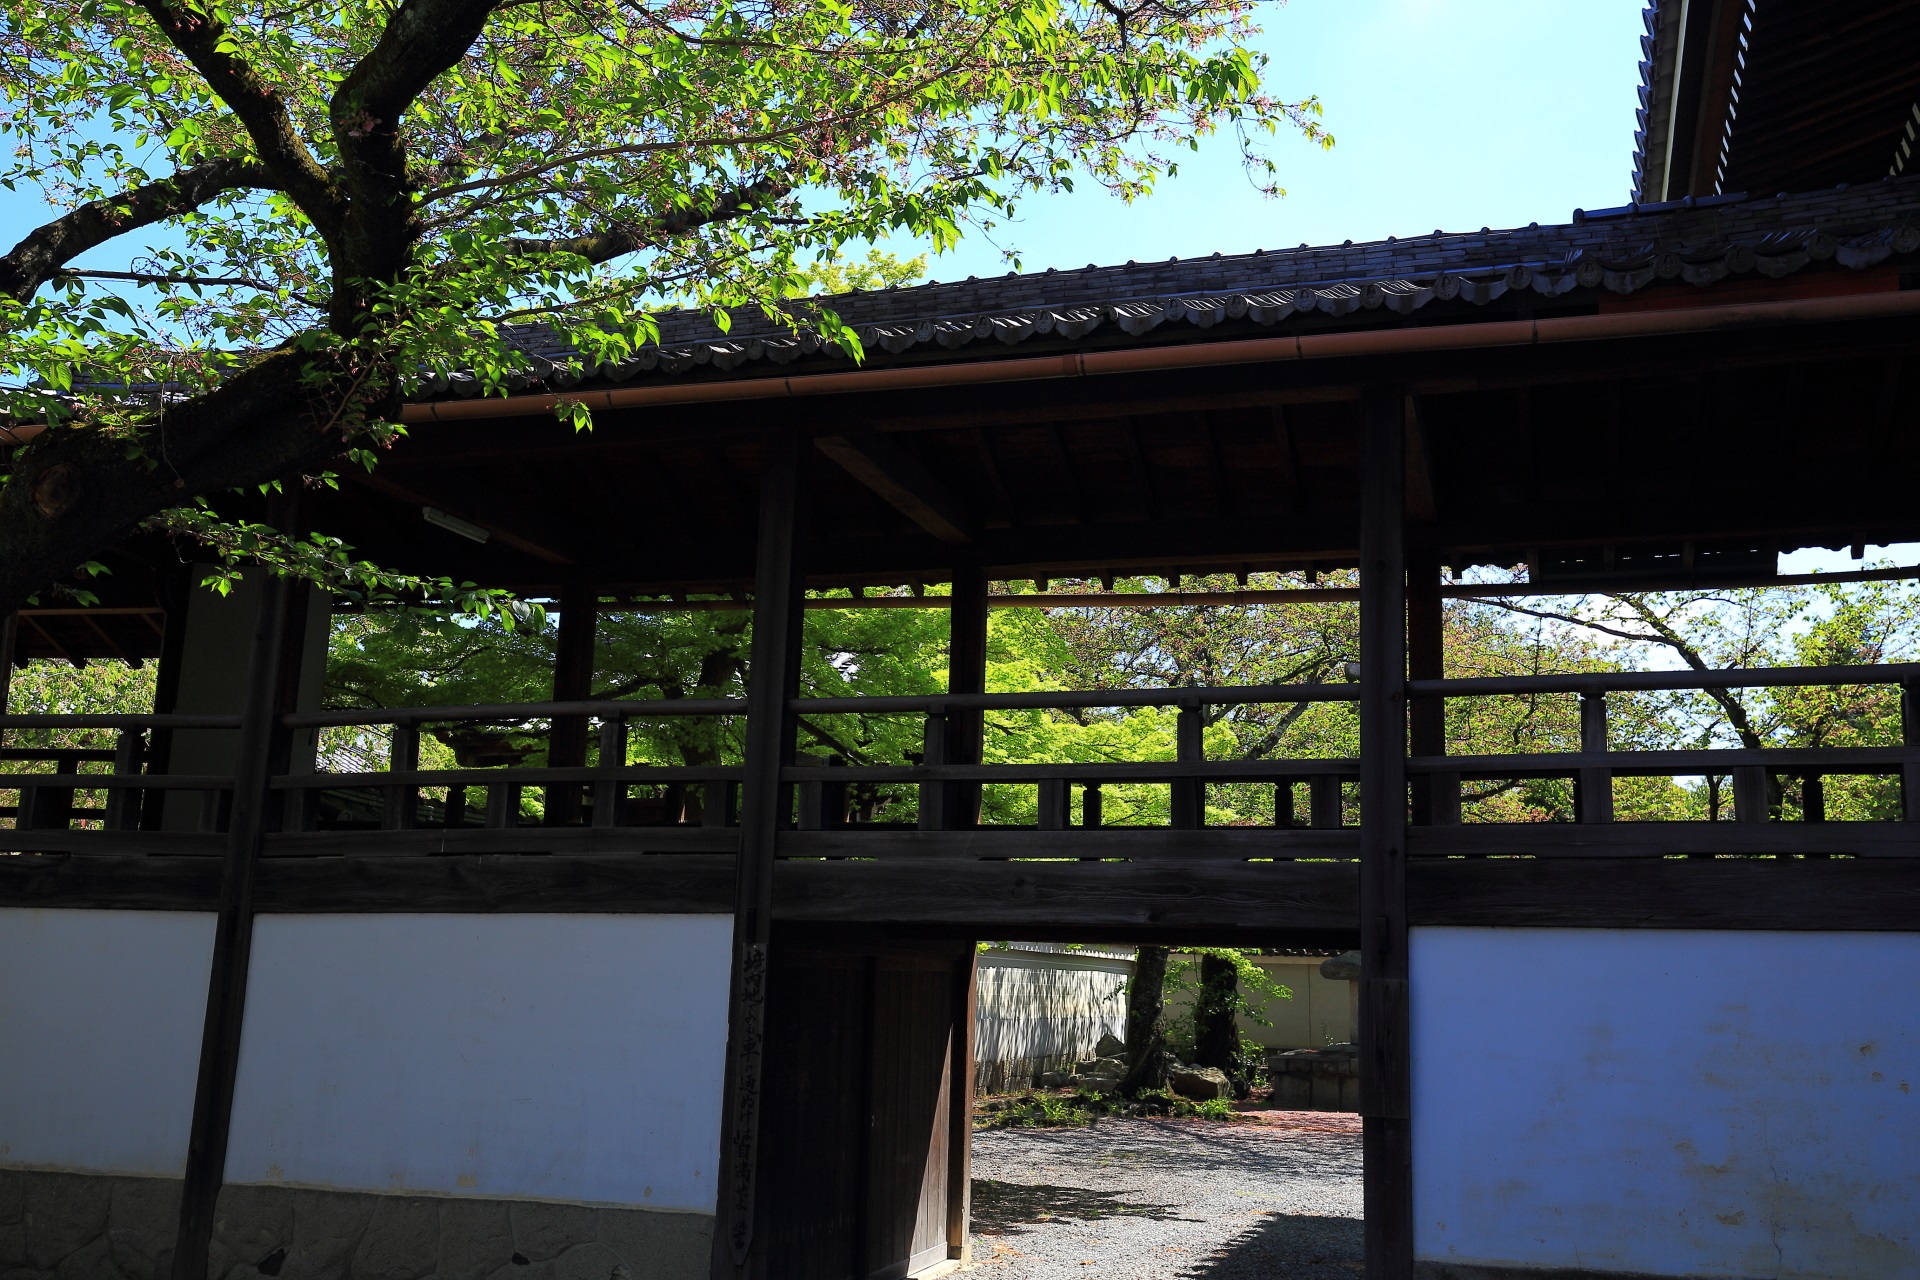 妙顕寺の風情ある渡廊下と新緑